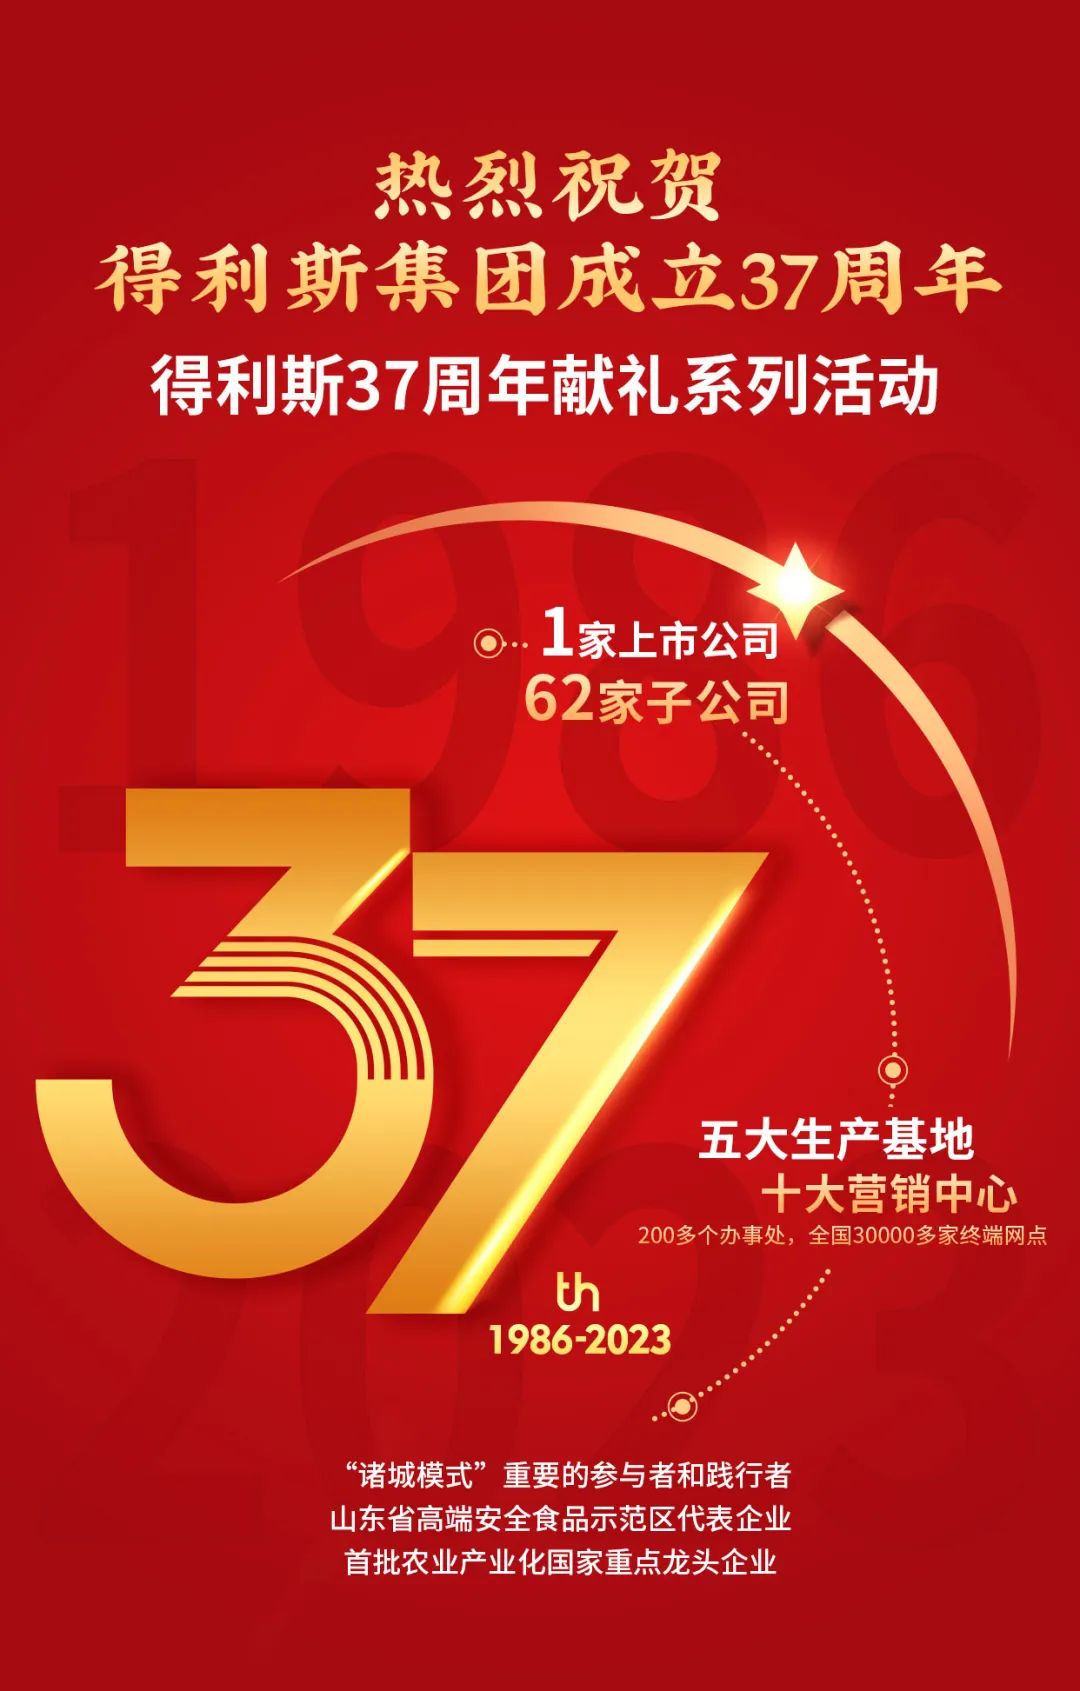 得利斯北京基地热烈祝贺得利斯集团成立37周年